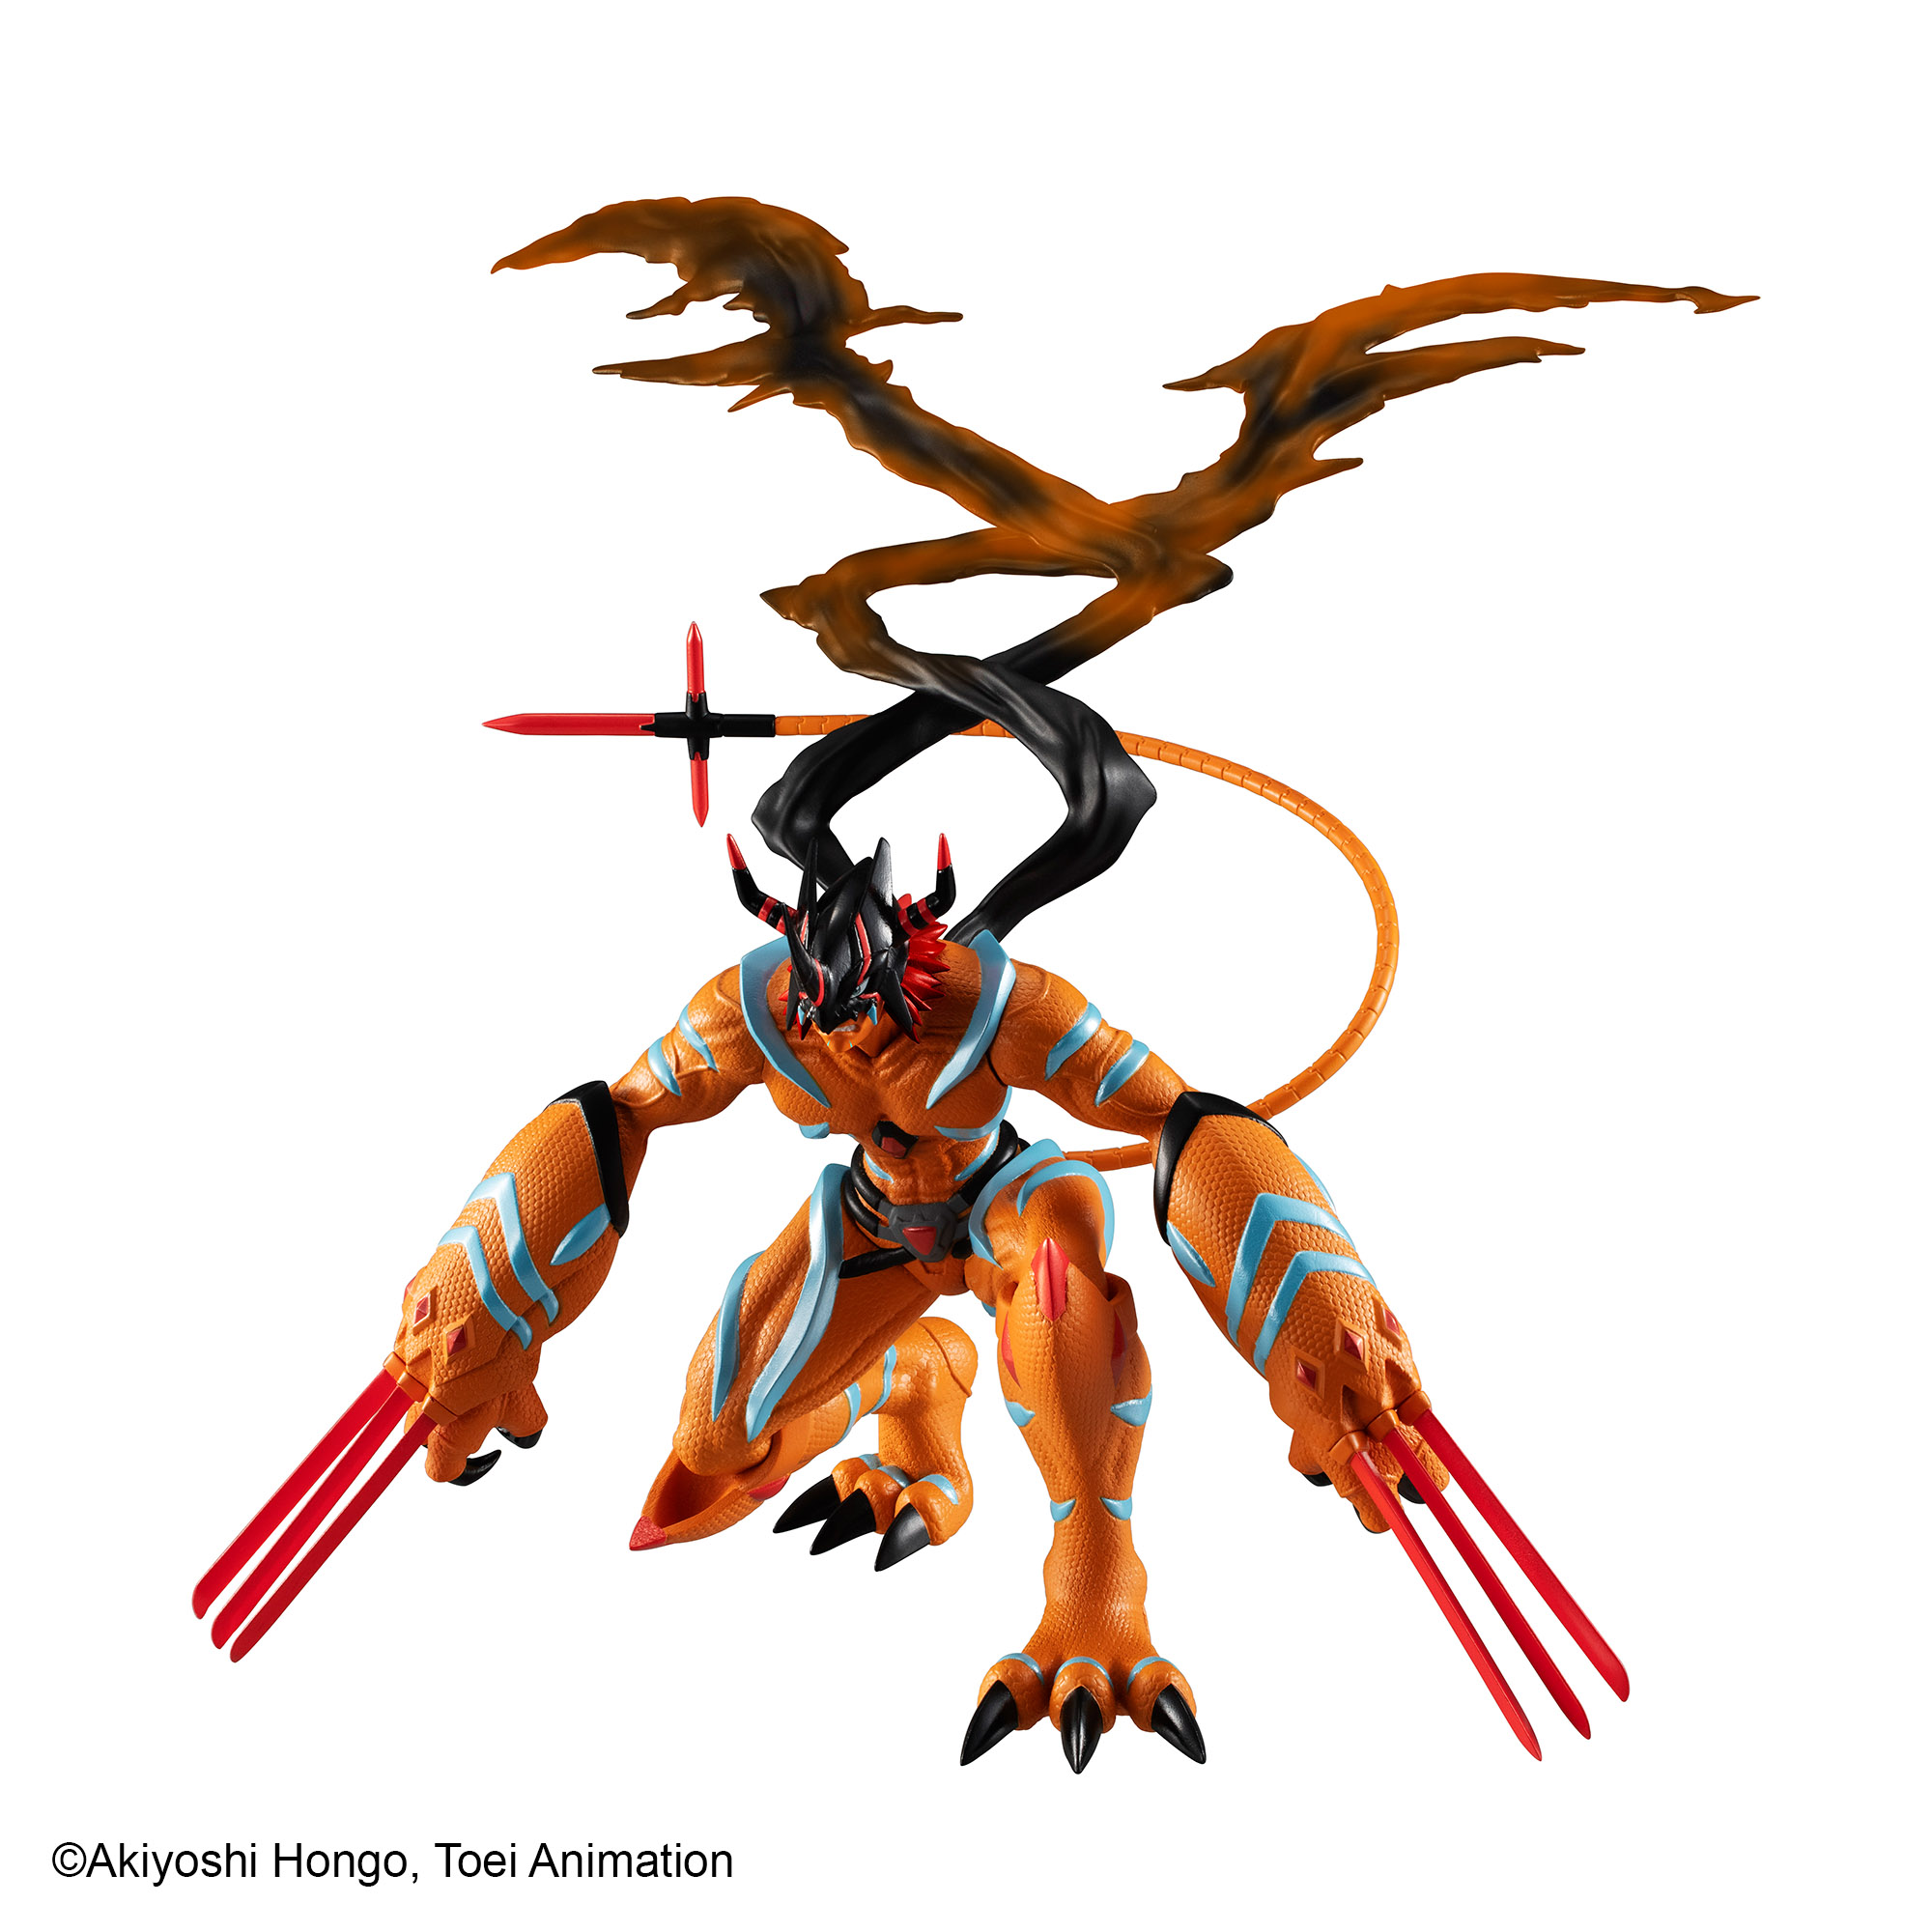 Digimon:SR: Digimon Adventure Last Evolution Kizuna